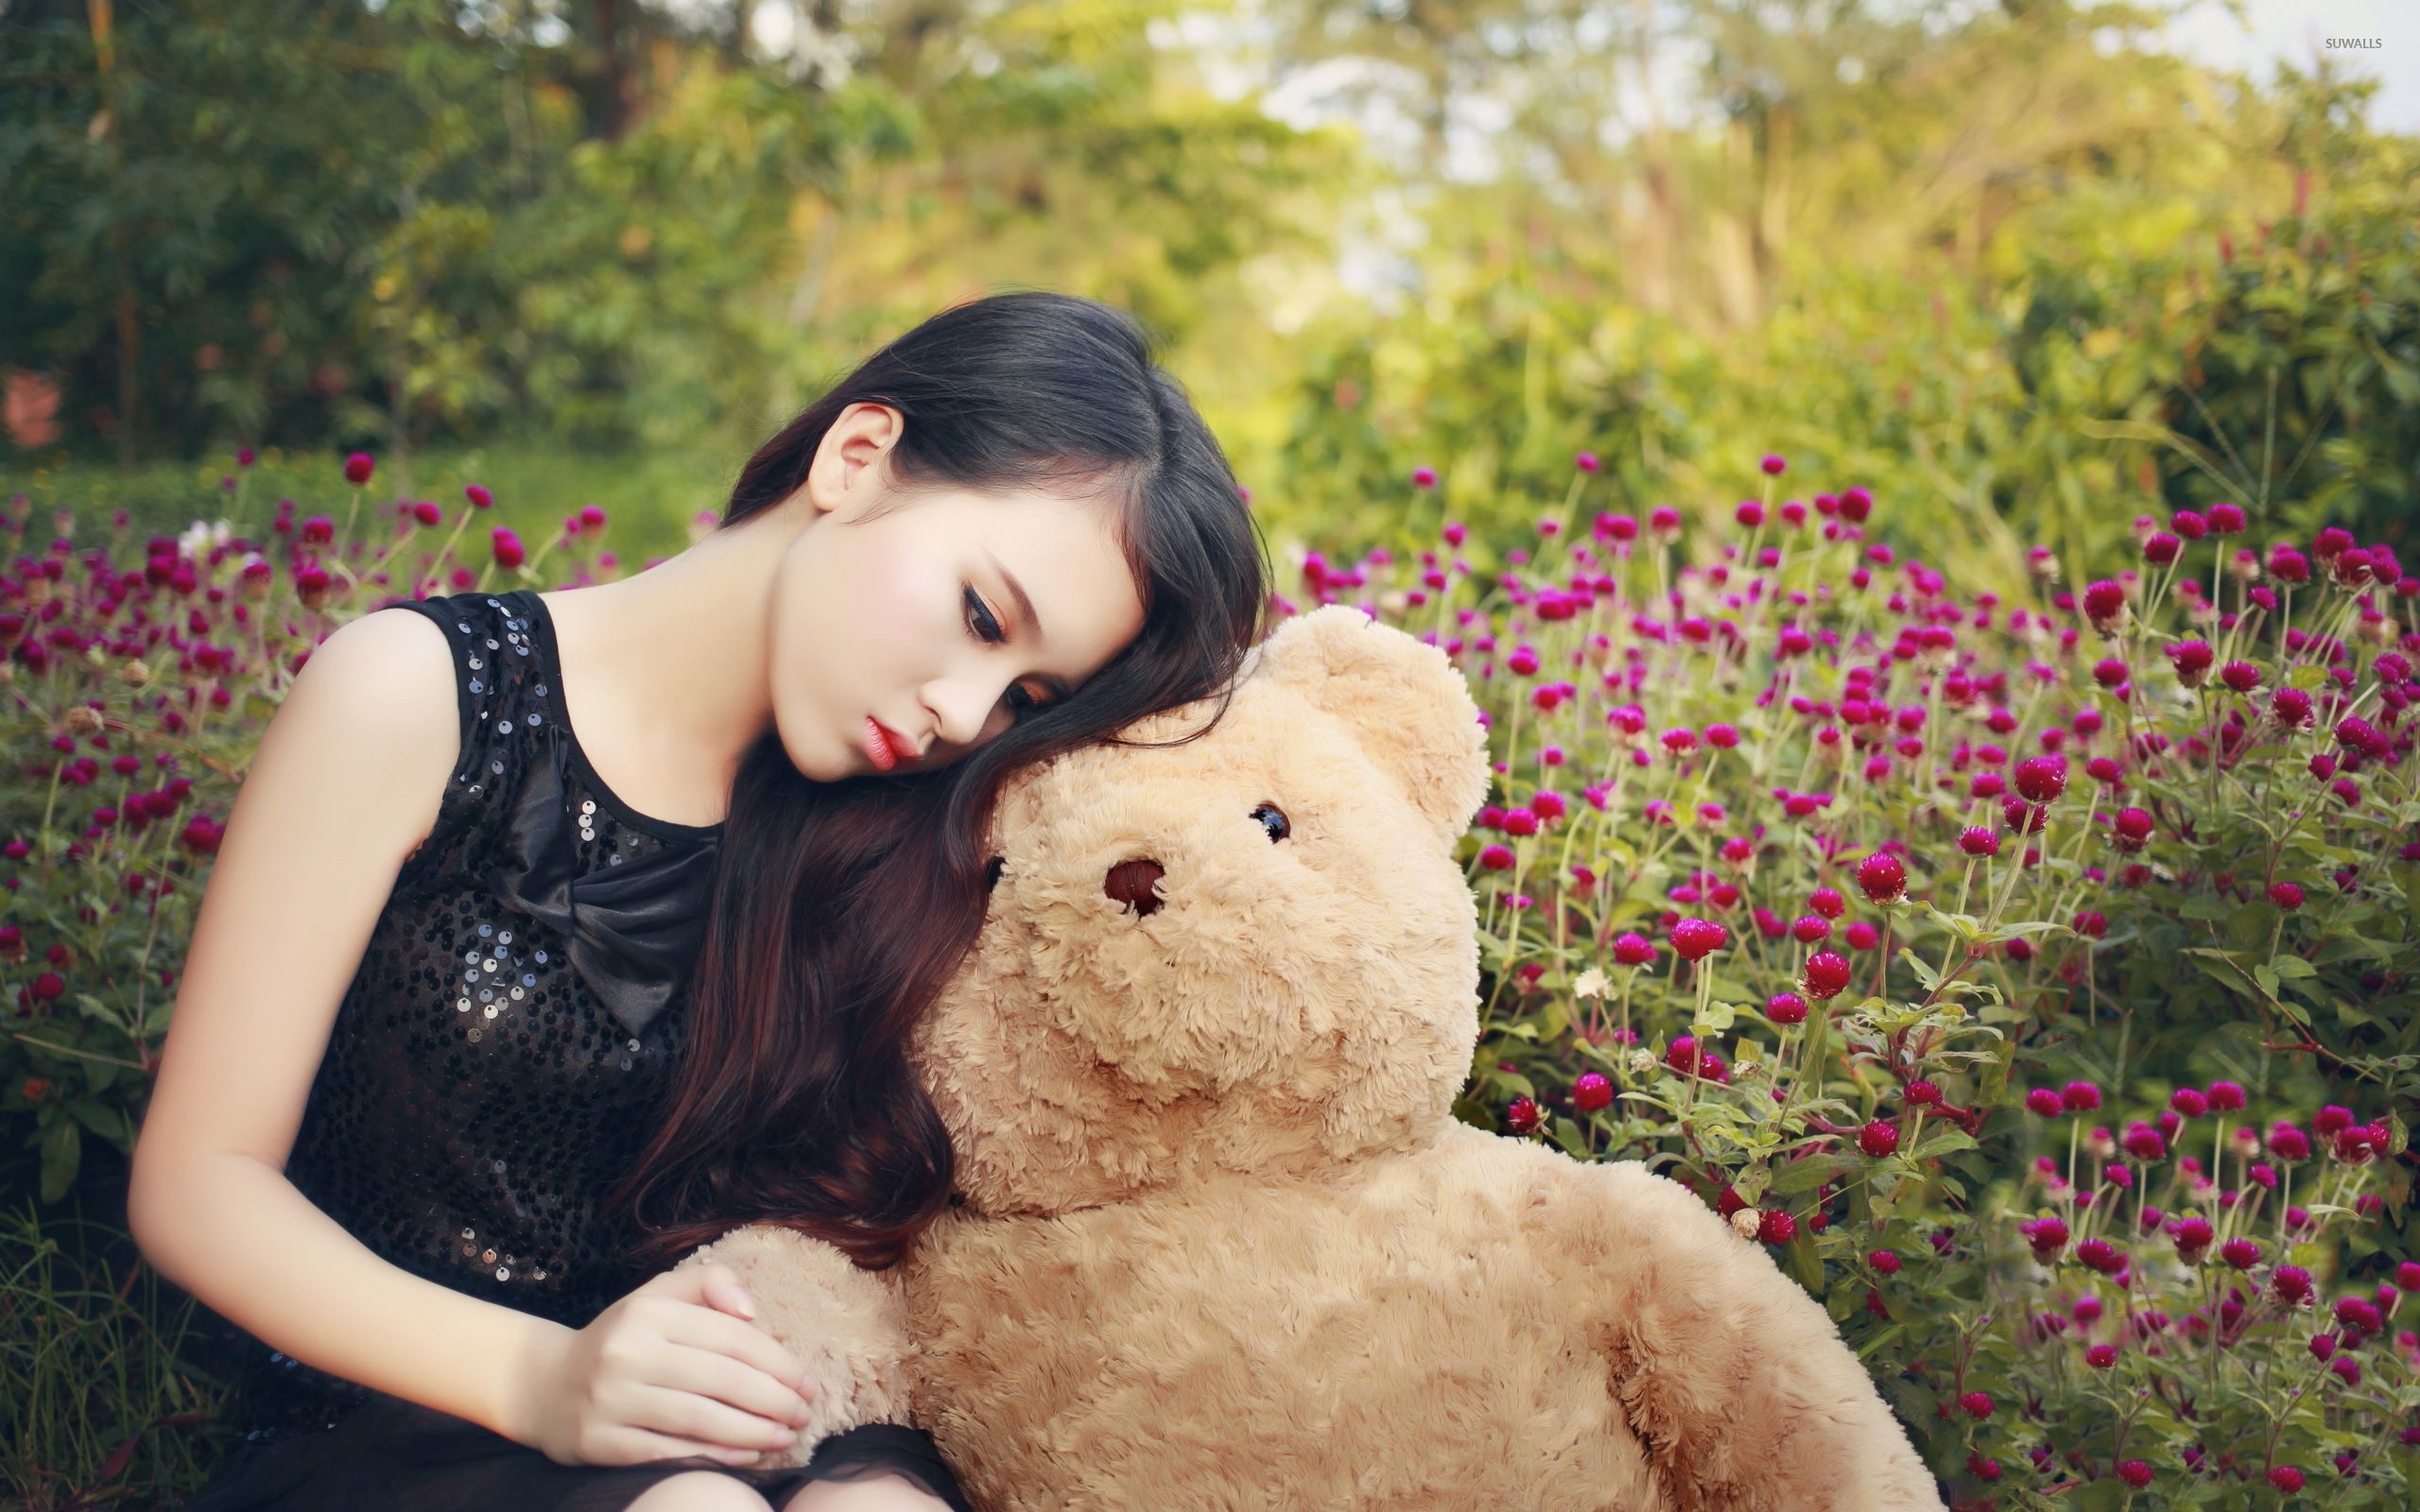 girl with a teddy bear